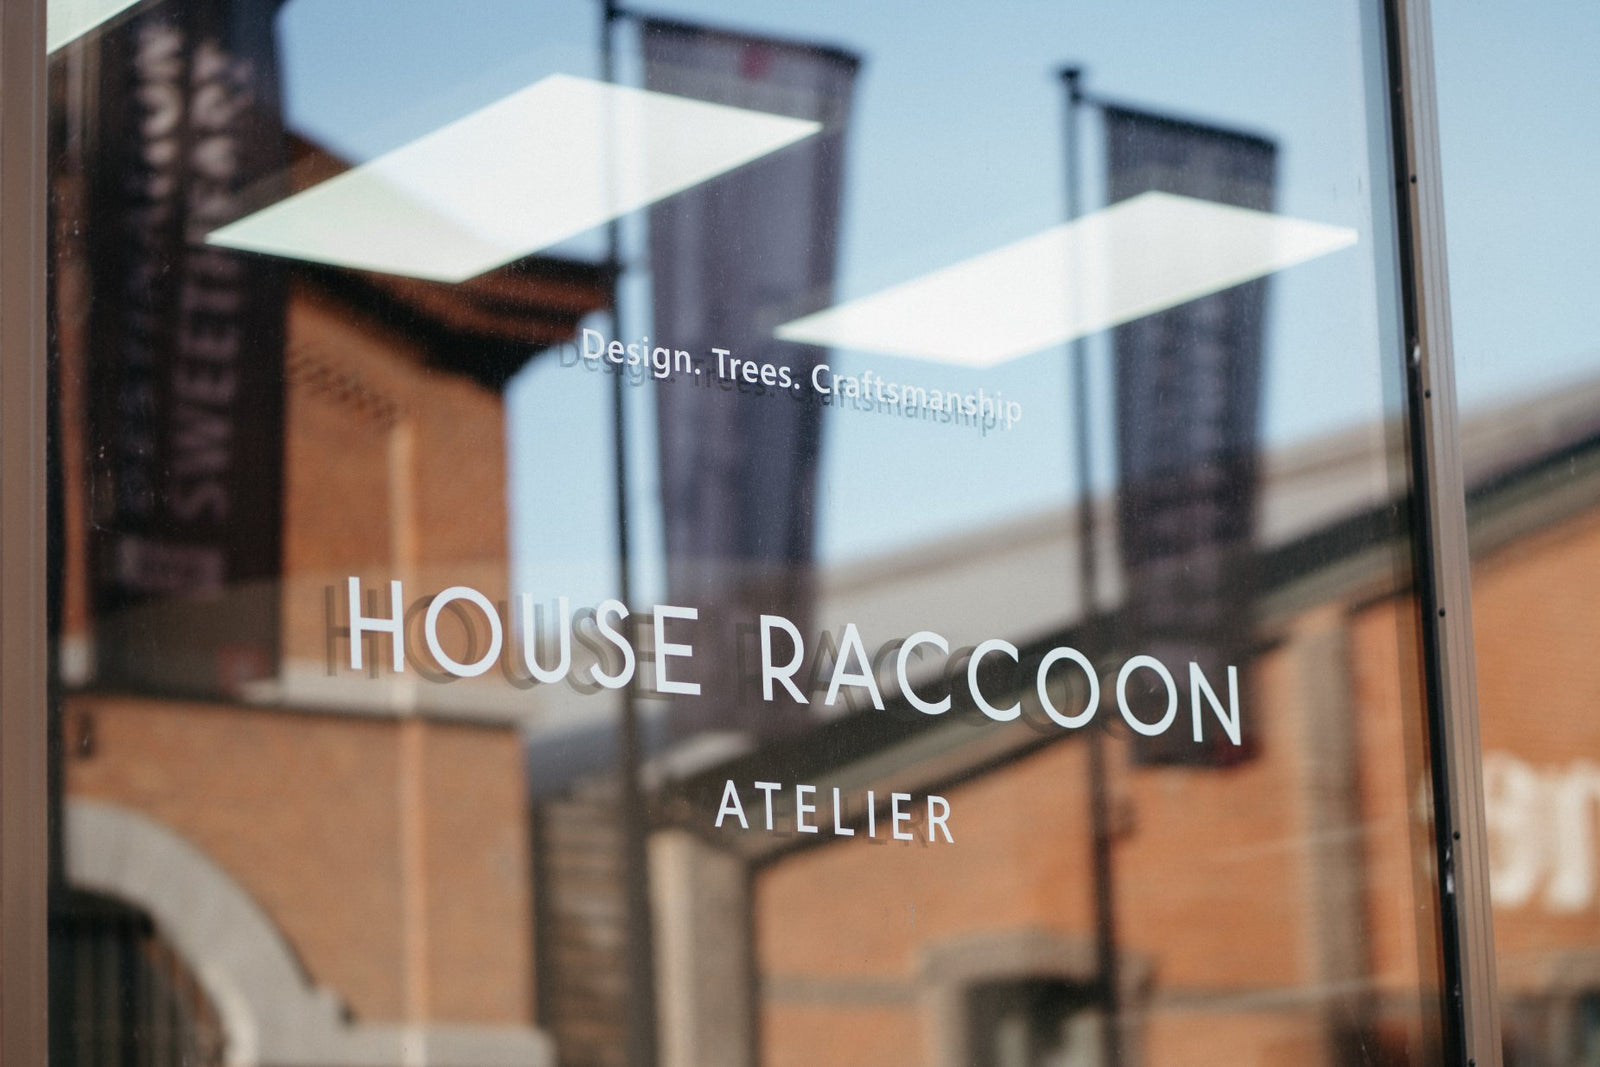 Atelier House Raccoon, Antwerpen